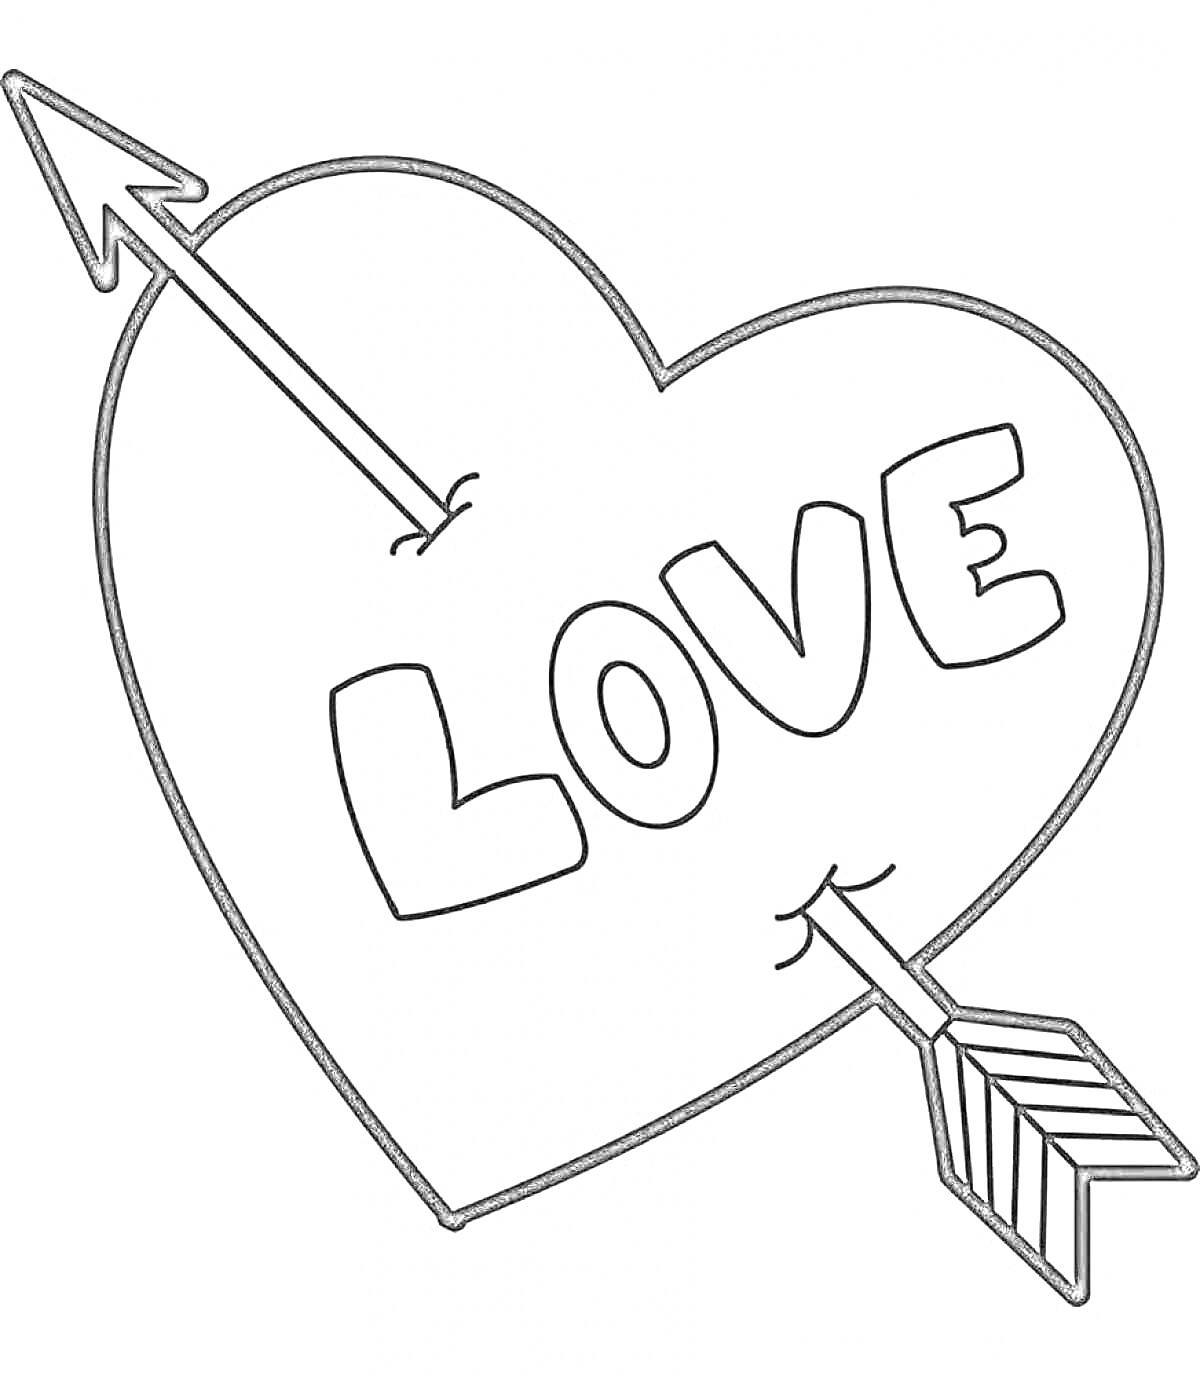 Раскраска Сердце с надписью Love и стрелой